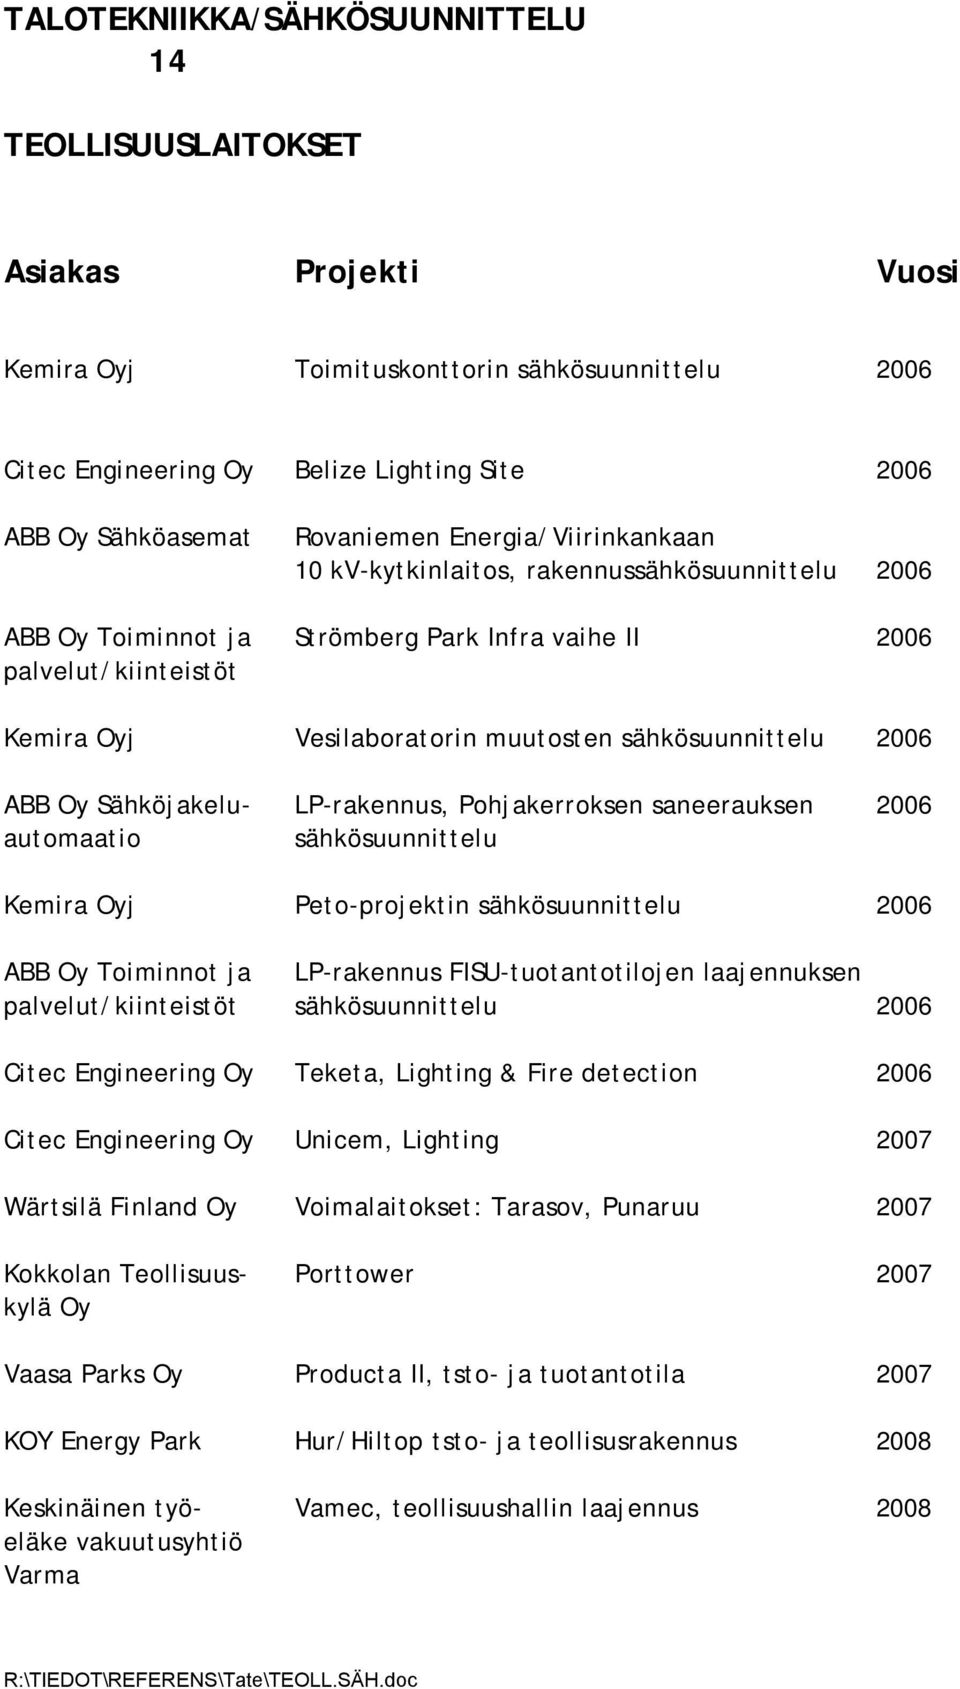 Sähköjakelu- LP-rakennus, Pohjakerroksen saneerauksen 2006 automaatio sähkösuunnittelu Kemira Oyj Peto-projektin sähkösuunnittelu 2006 ABB Oy Toiminnot ja LP-rakennus FISU-tuotantotilojen